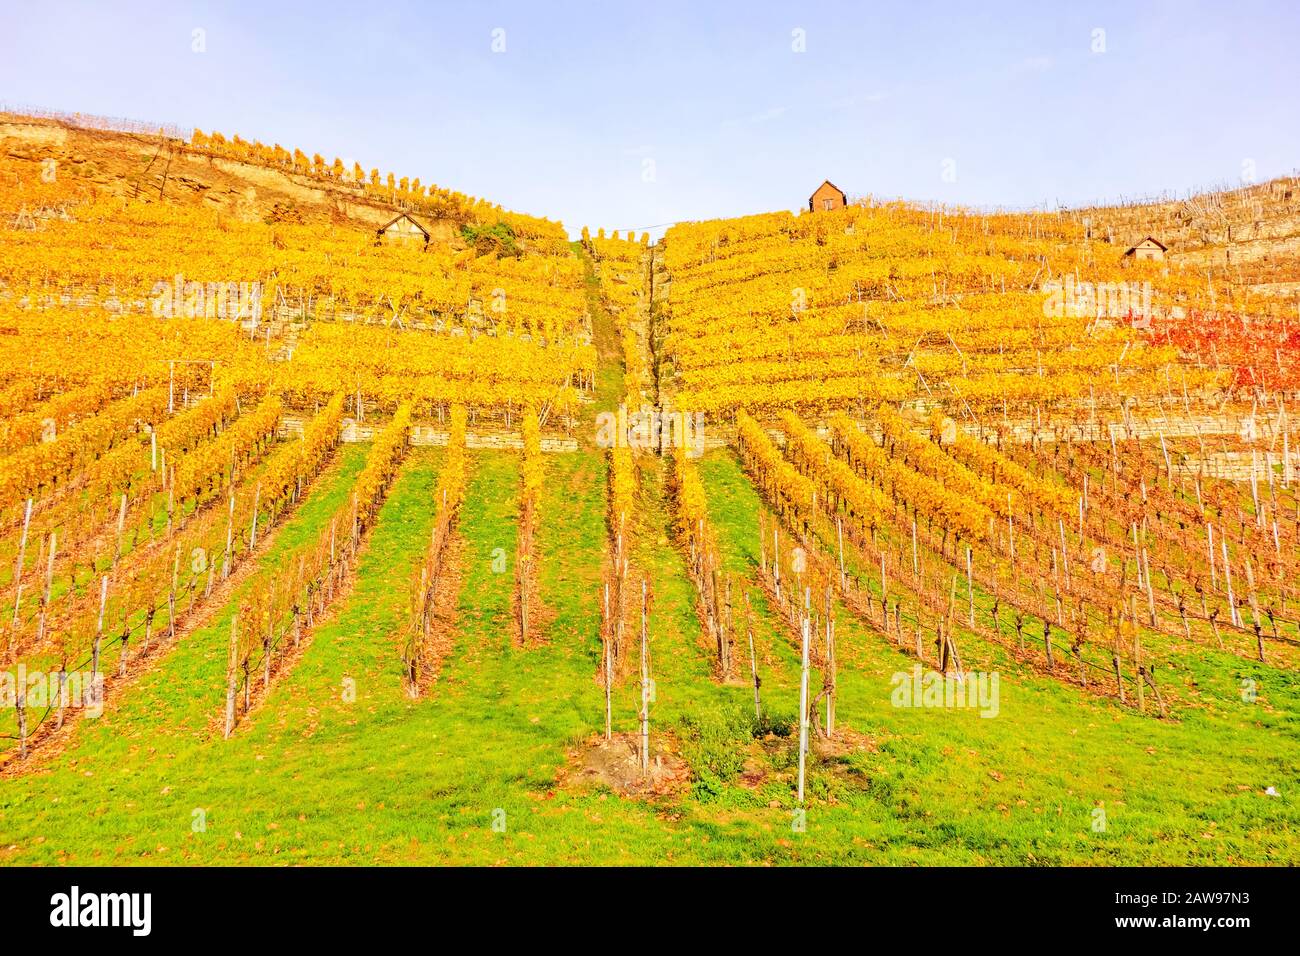 Vigneto in autunno - vinicoltura capanne di vinificatori tra viti in collina con foglie giallo dorato Foto Stock